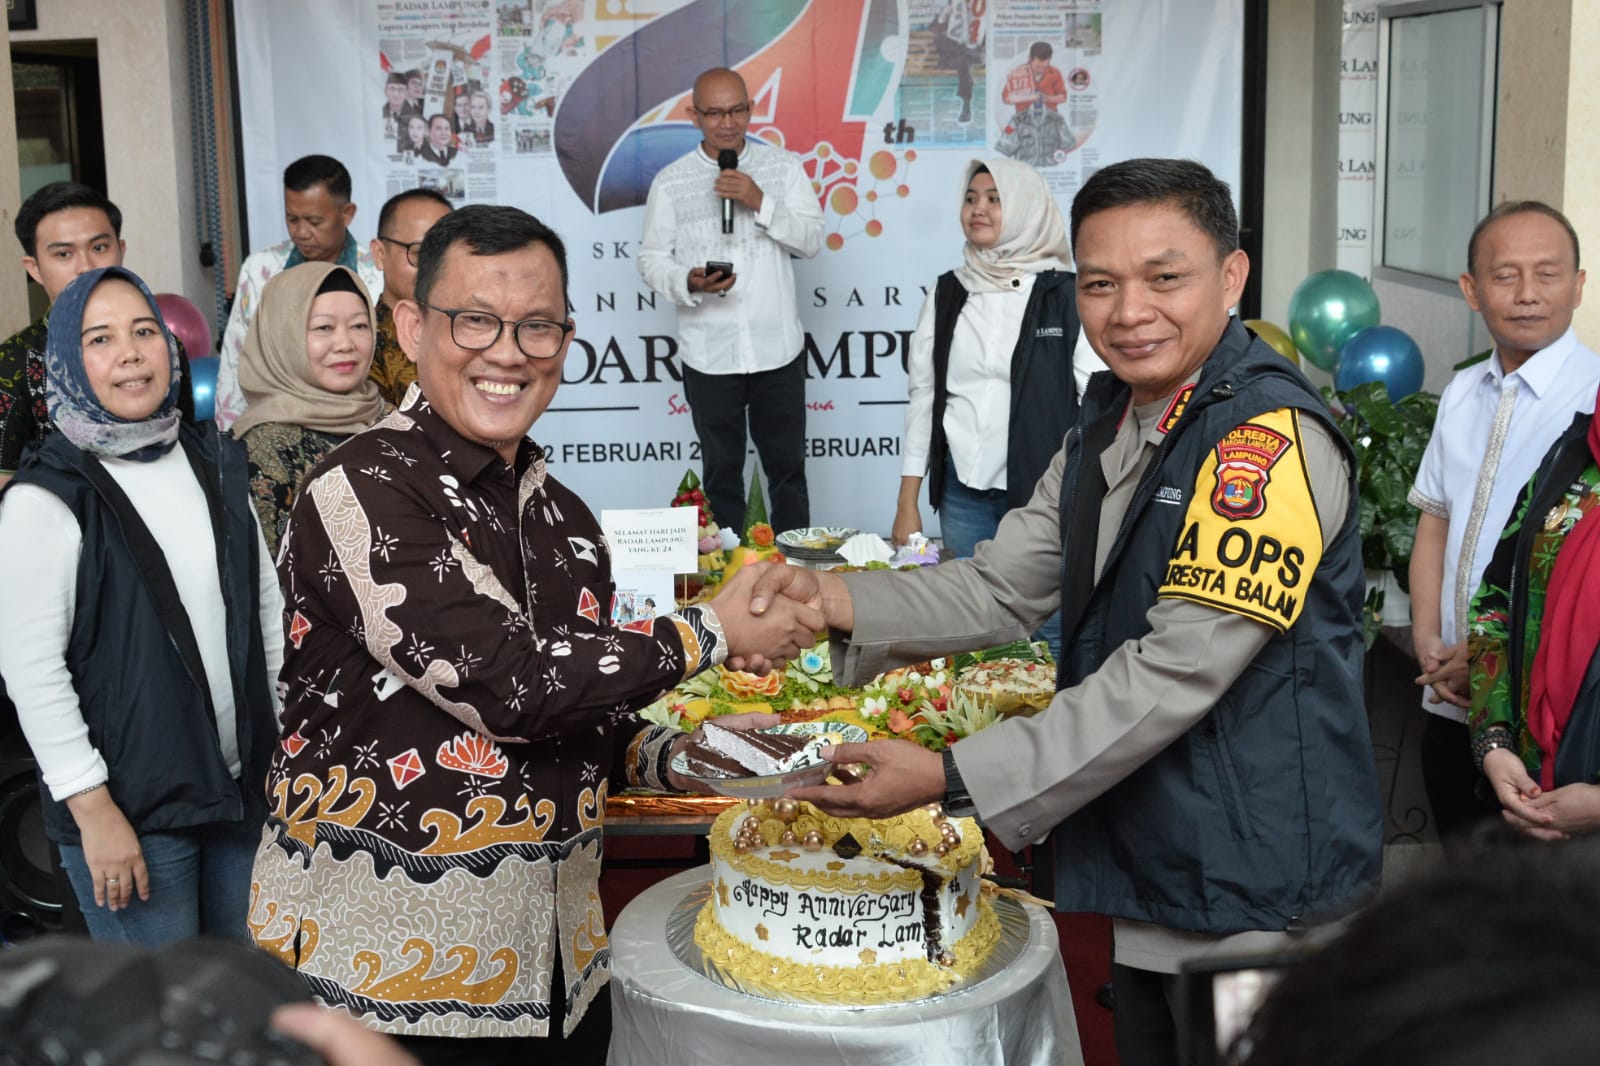 Kapolresta Bandar Lampung Kombes Pol Abdul Waras Beri Ucapan Selamat kepada Radar Lampung 